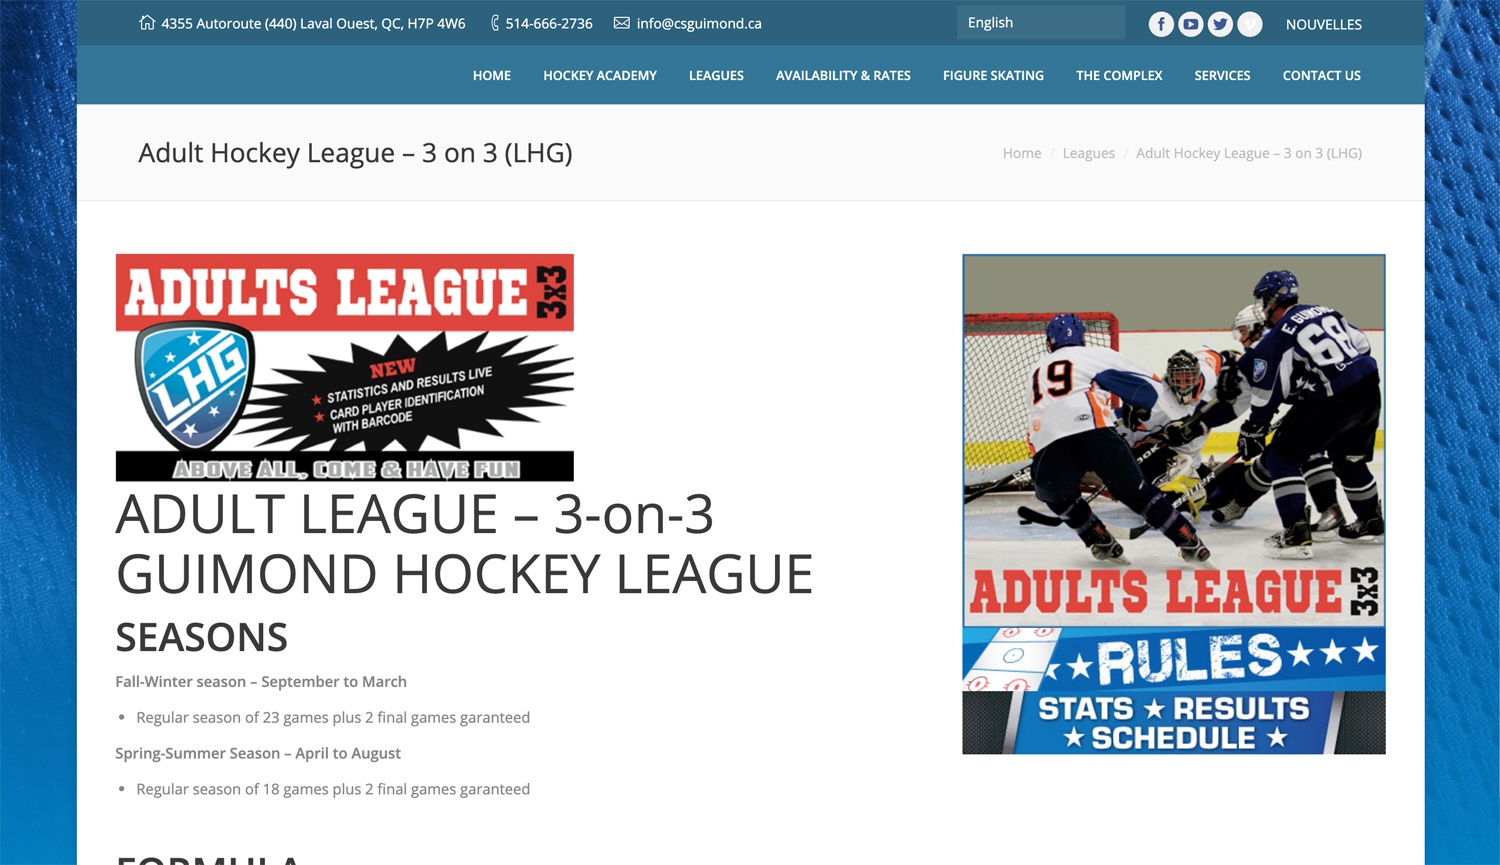 Guimond Hockey League